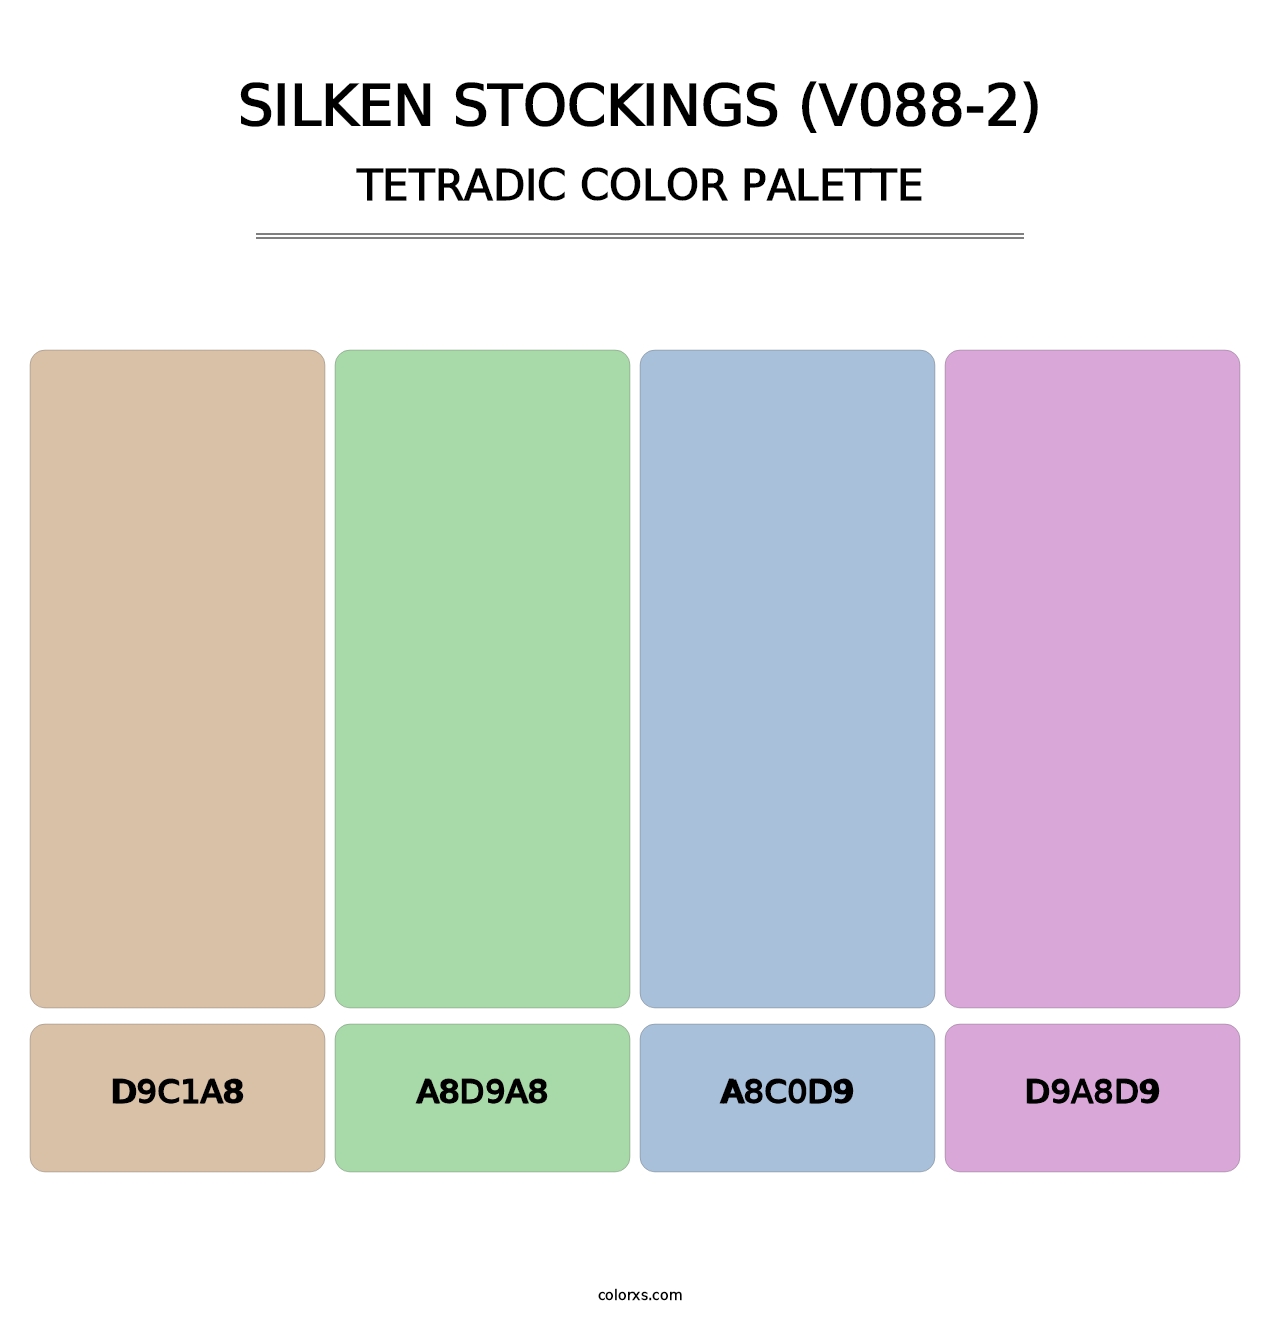 Silken Stockings (V088-2) - Tetradic Color Palette